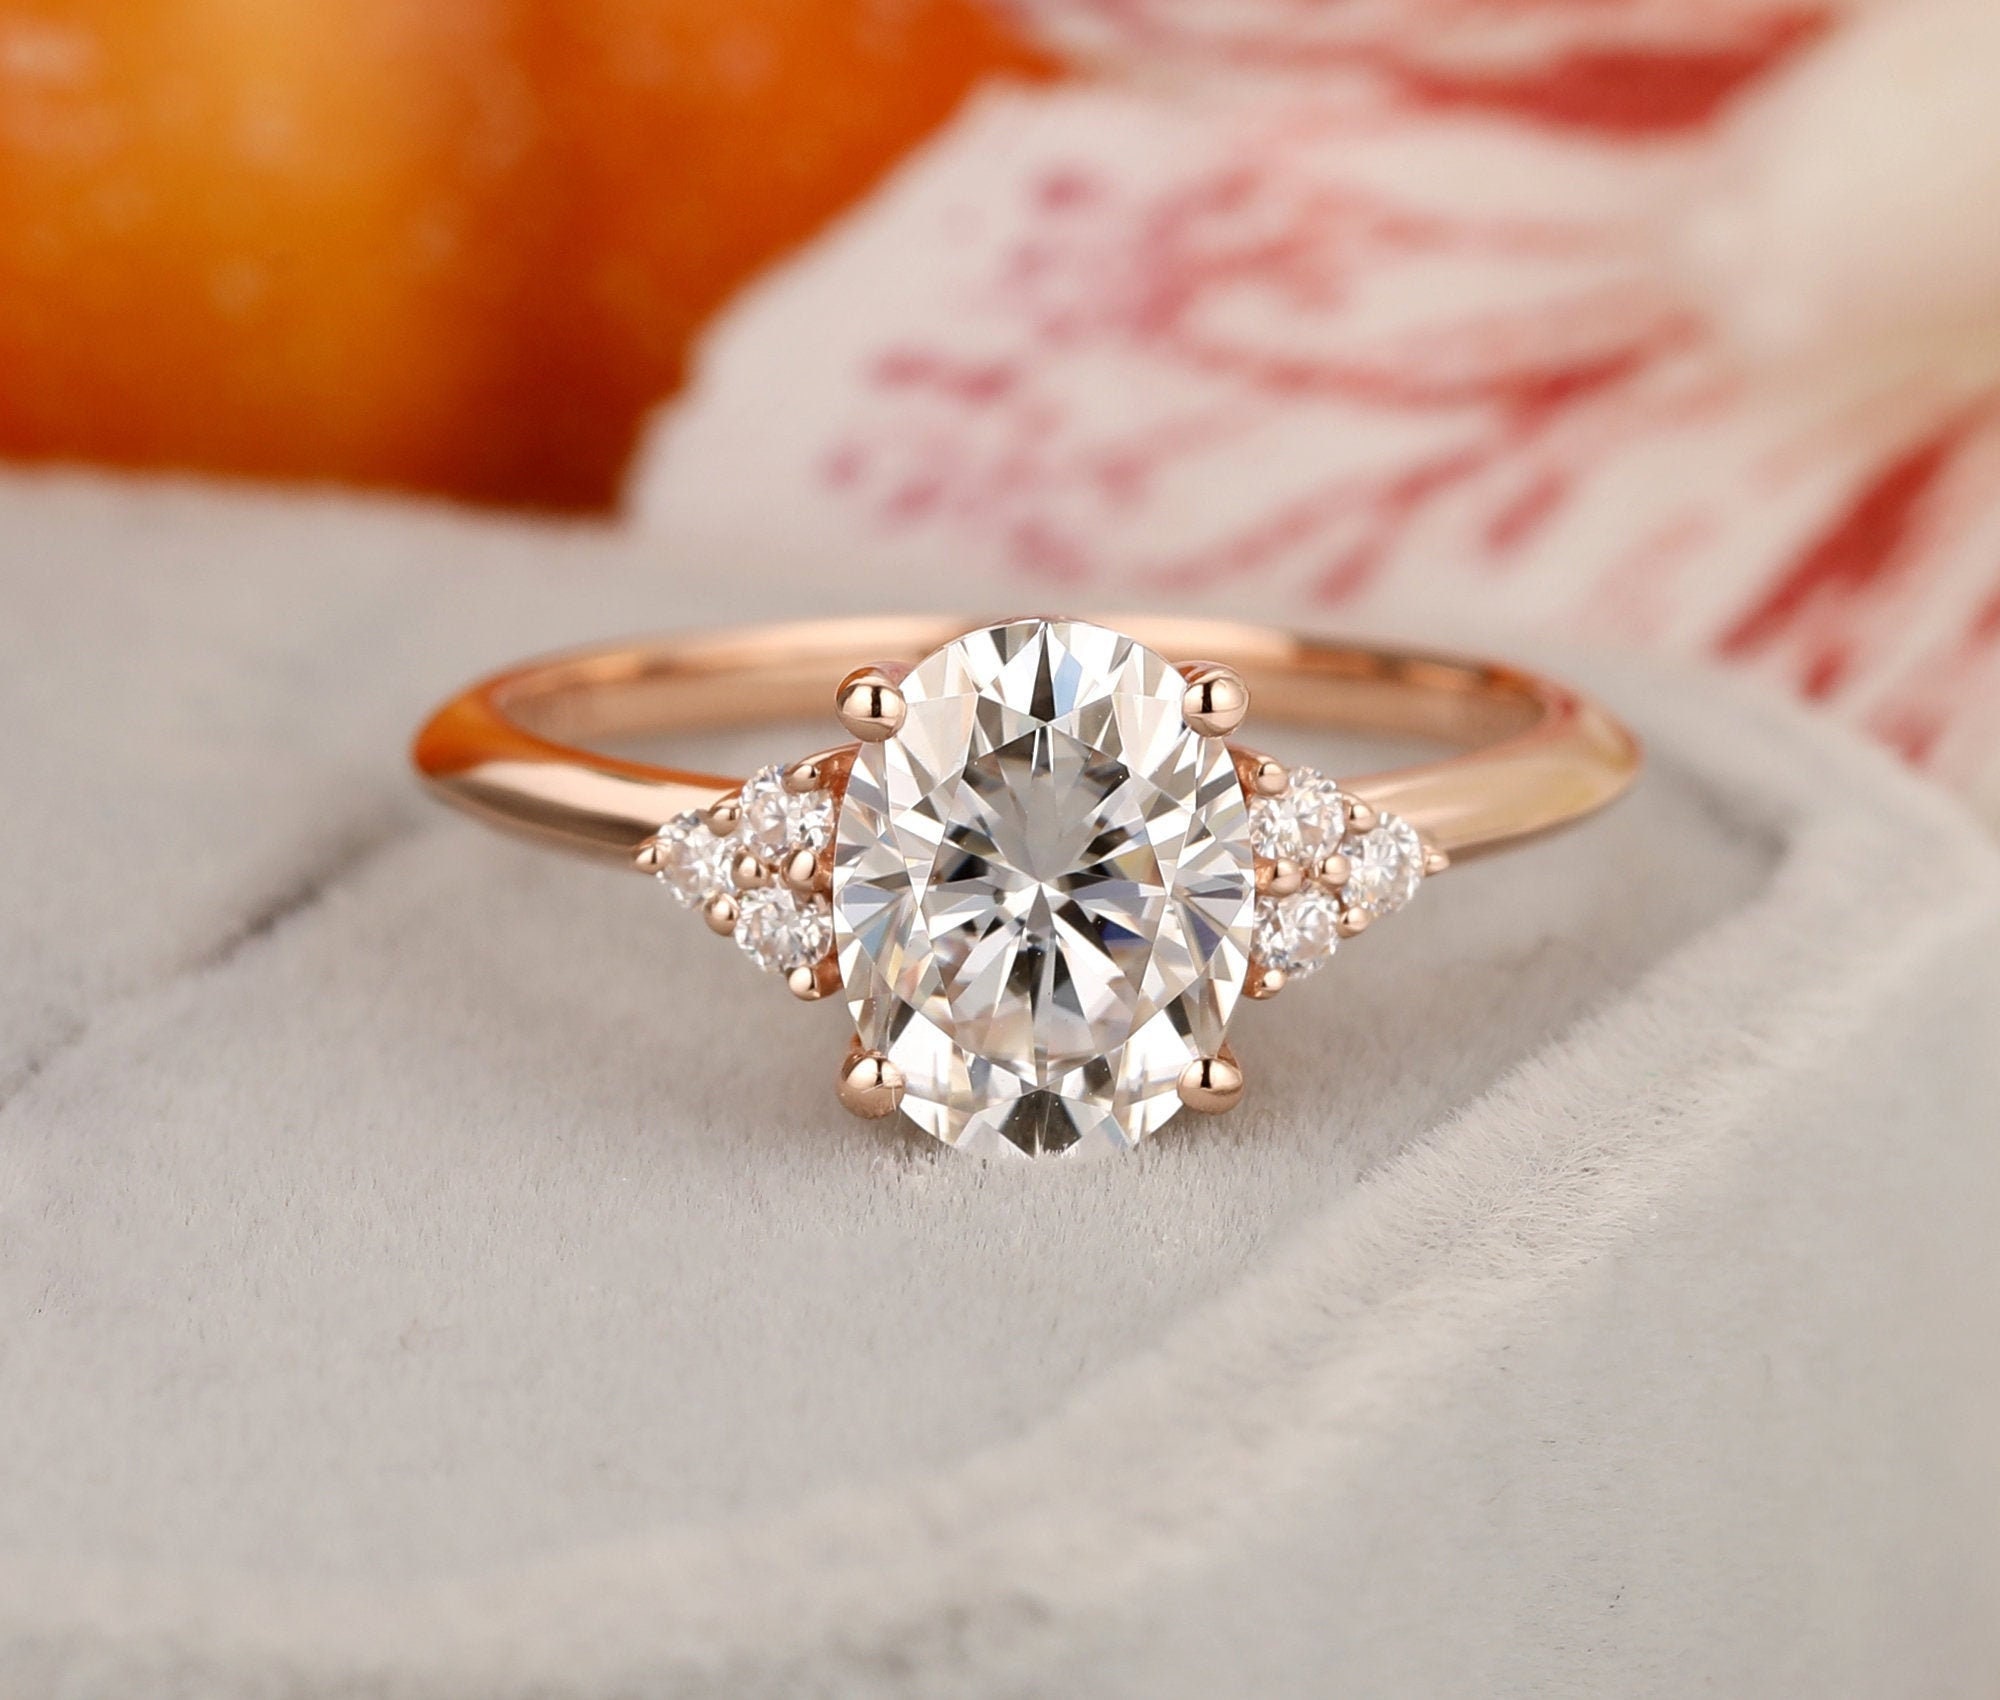 Custom Gemstone Rings 6x8mm Oval Moissanite Engagement Ring | Etsy